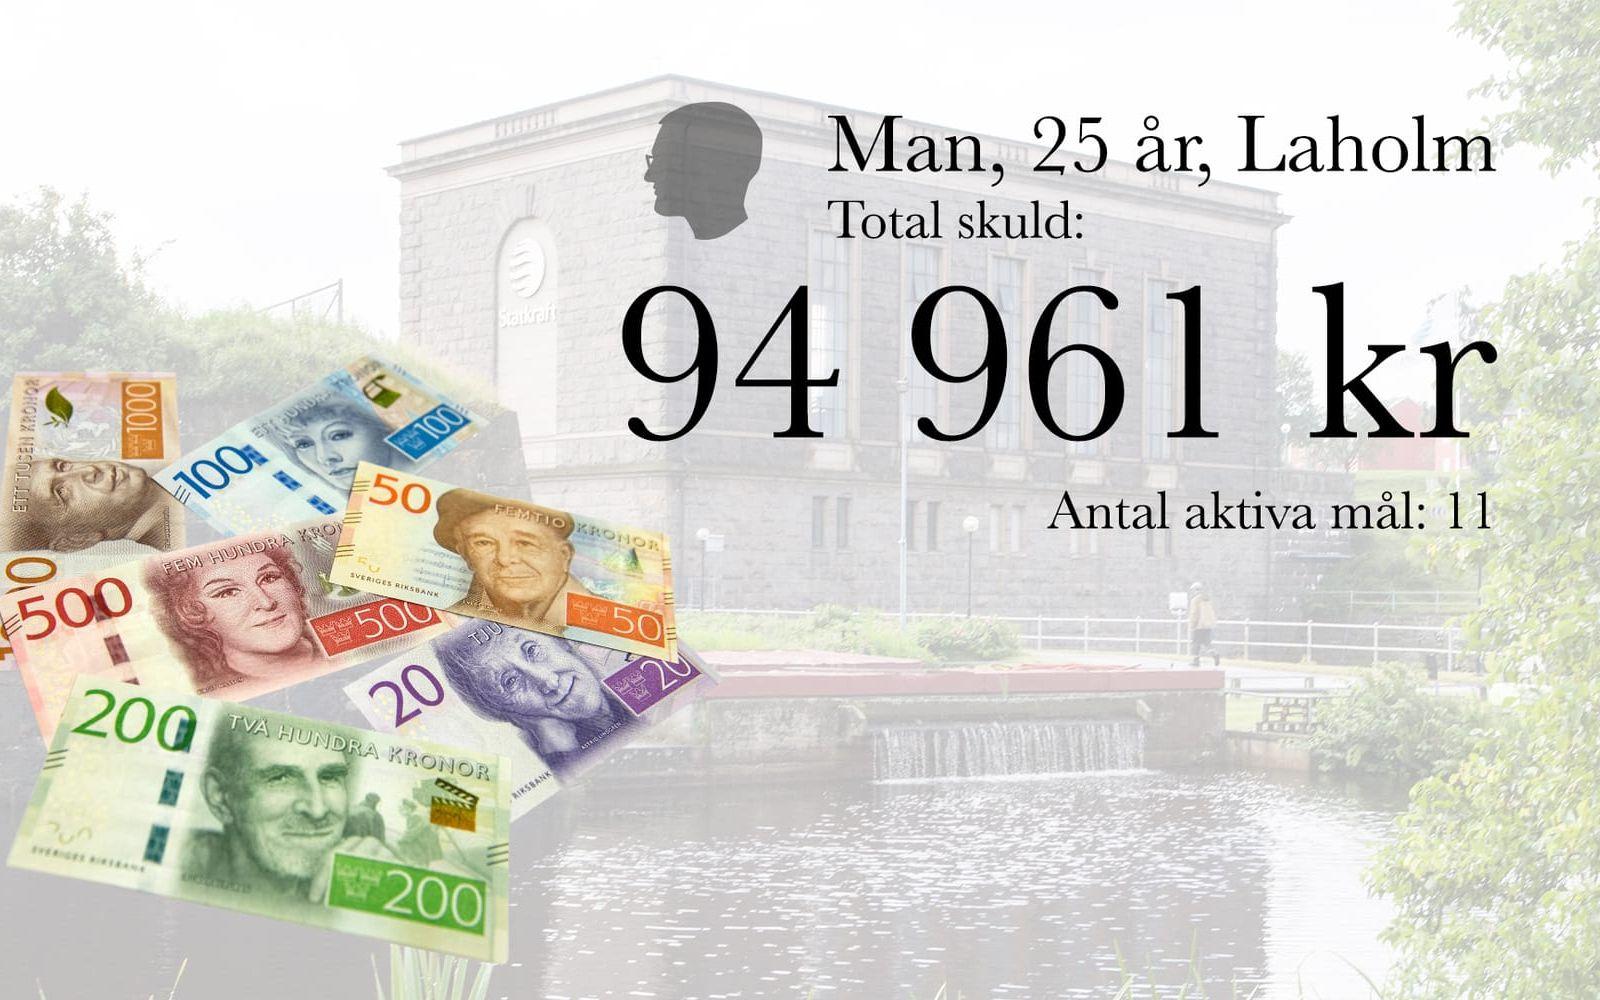 21. Man, 25 år, Laholm. Total skuld: 94 961 kronor. Antal aktiva mål: 11.
